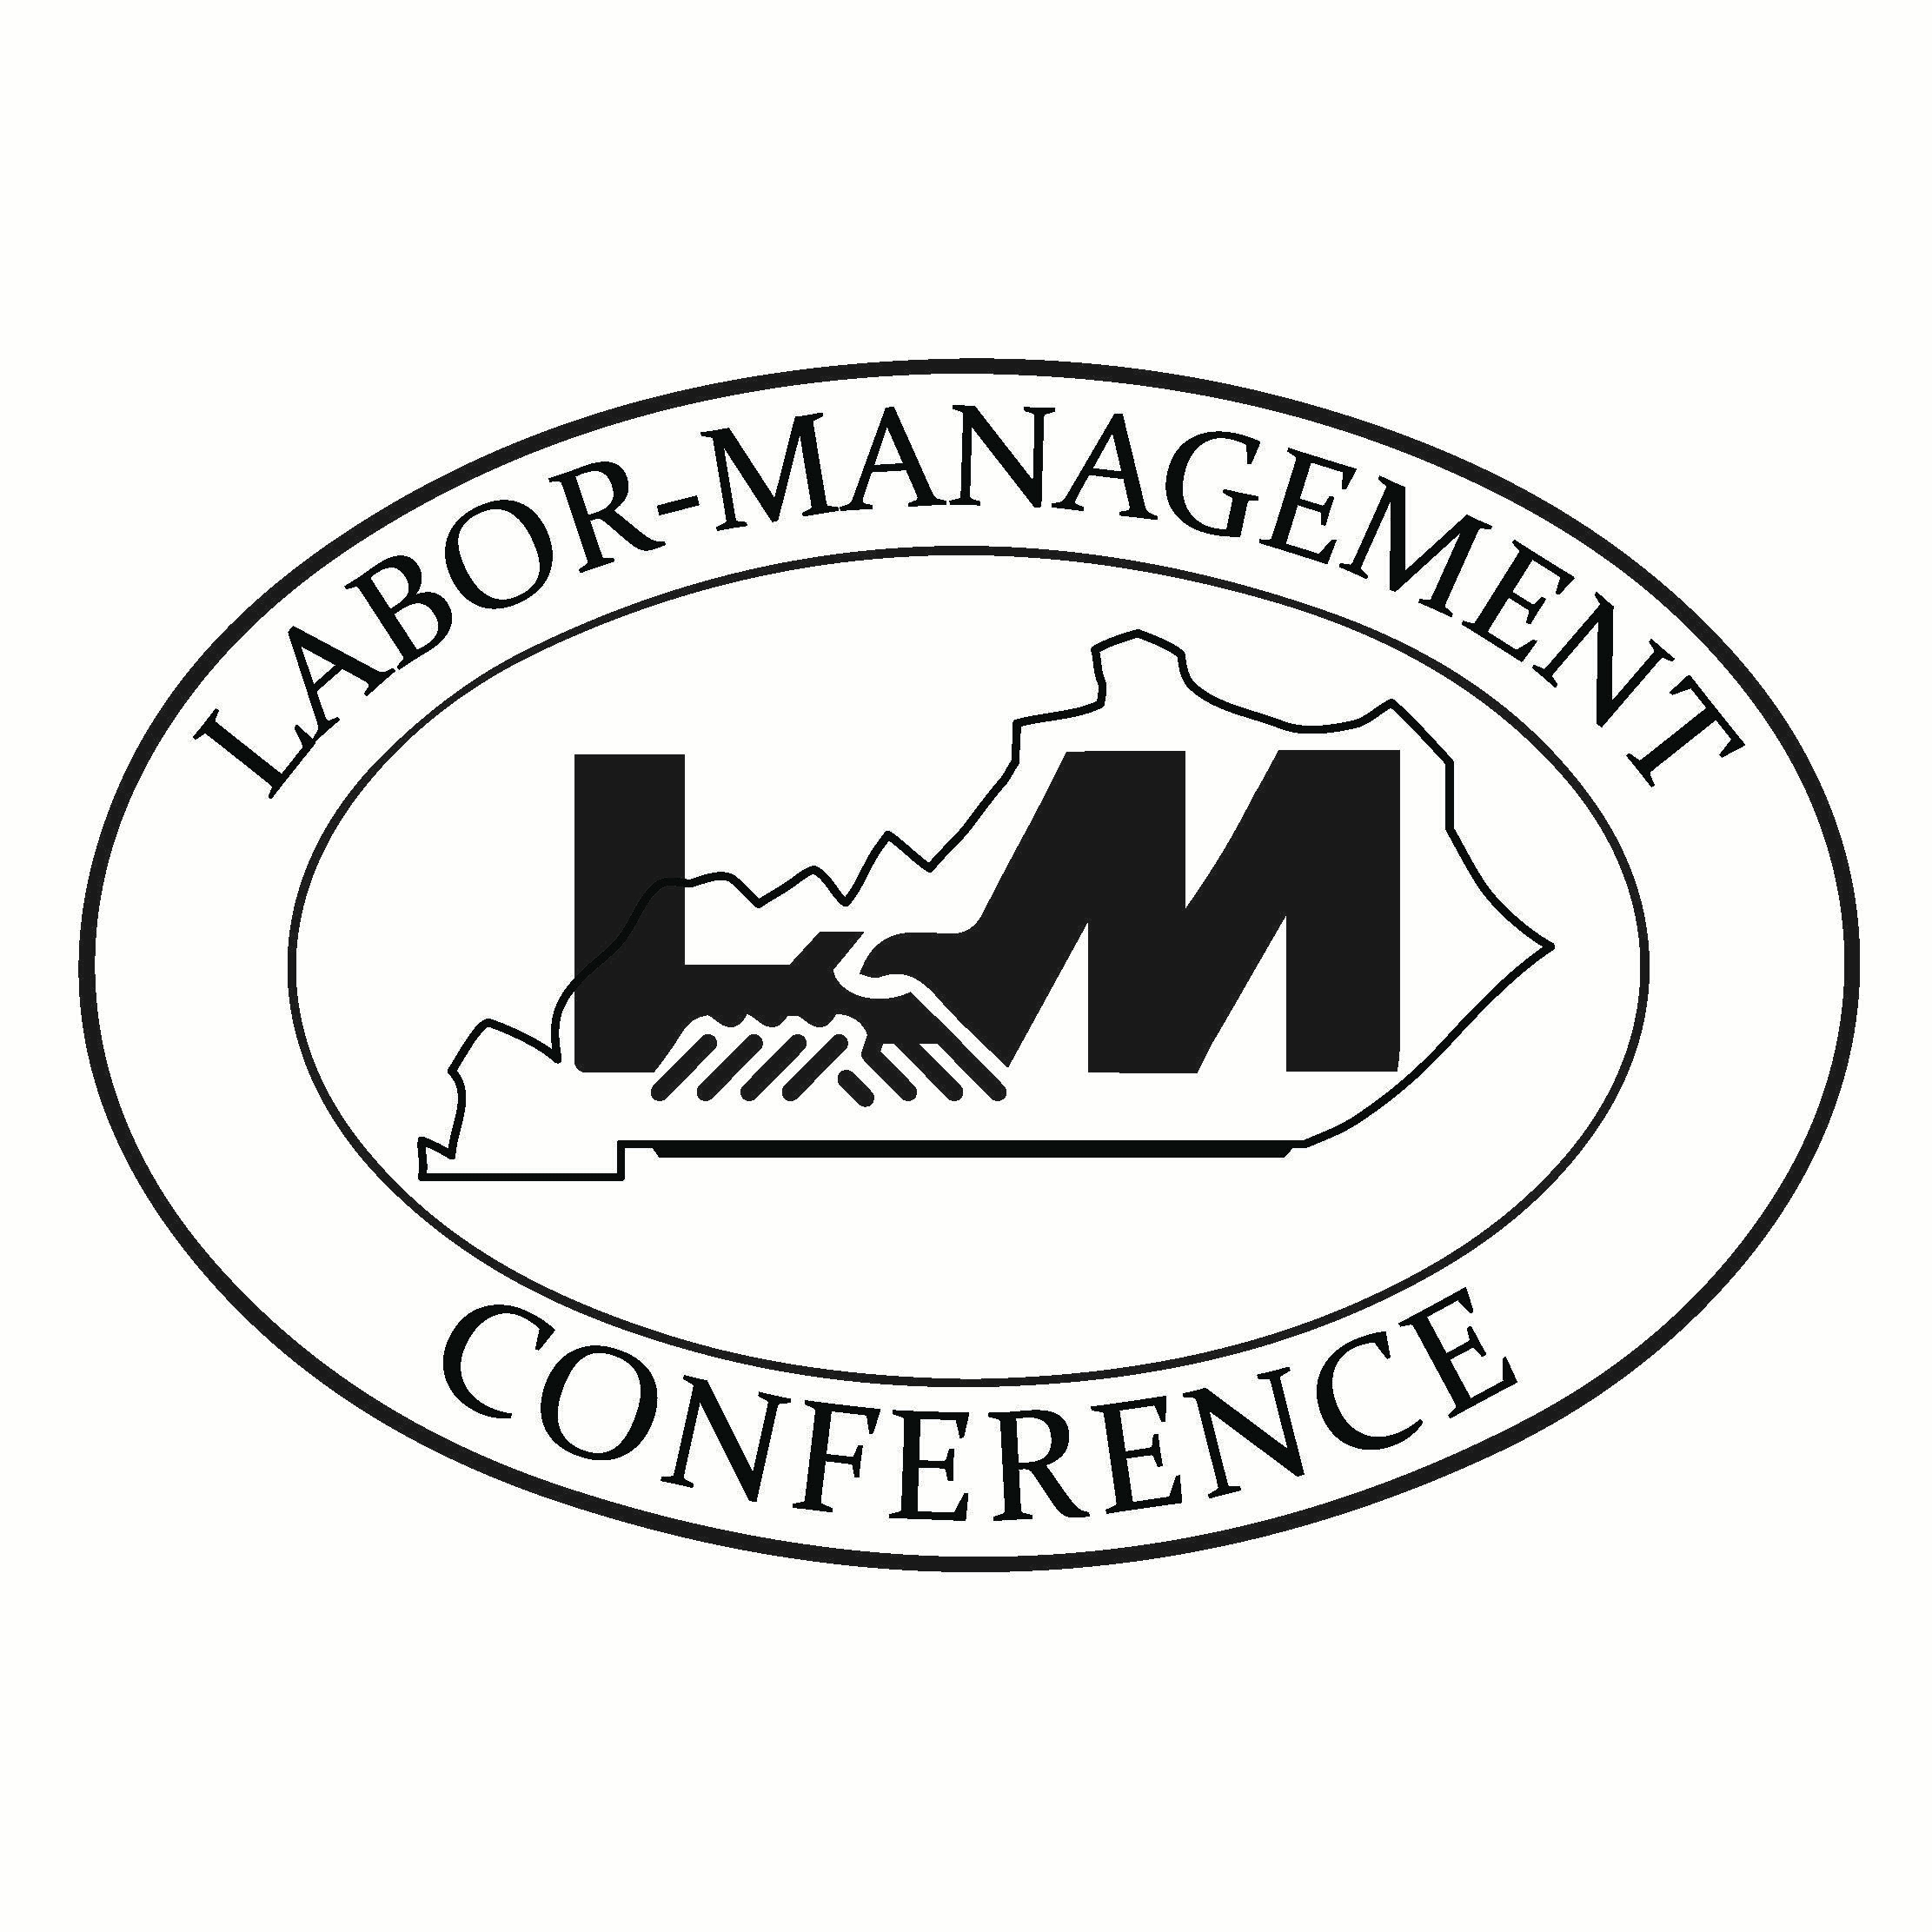 LaborManagementConfereceLogo